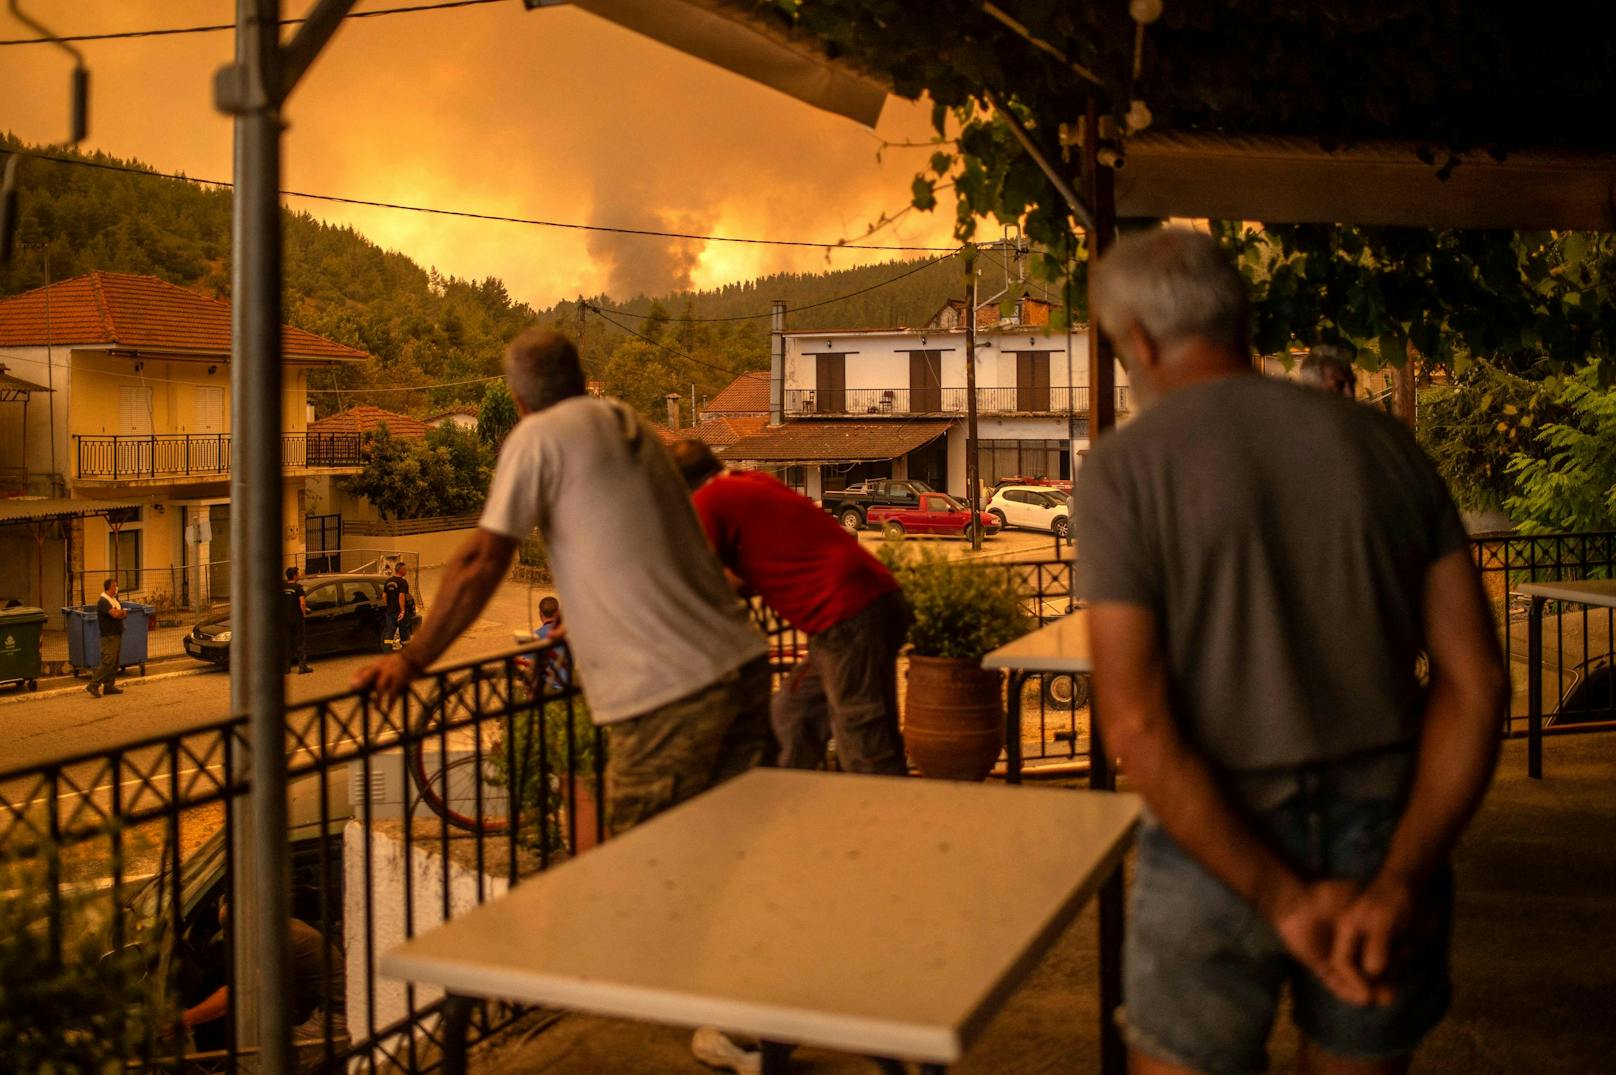 Schwere Waldbrände bedrohten auf der griechischen Insel Euböa, nördlich von Athen, mehrere Dörfer. Verzweifelt kämpften die Bewohner mit allen Mitteln gegen die Flammen.